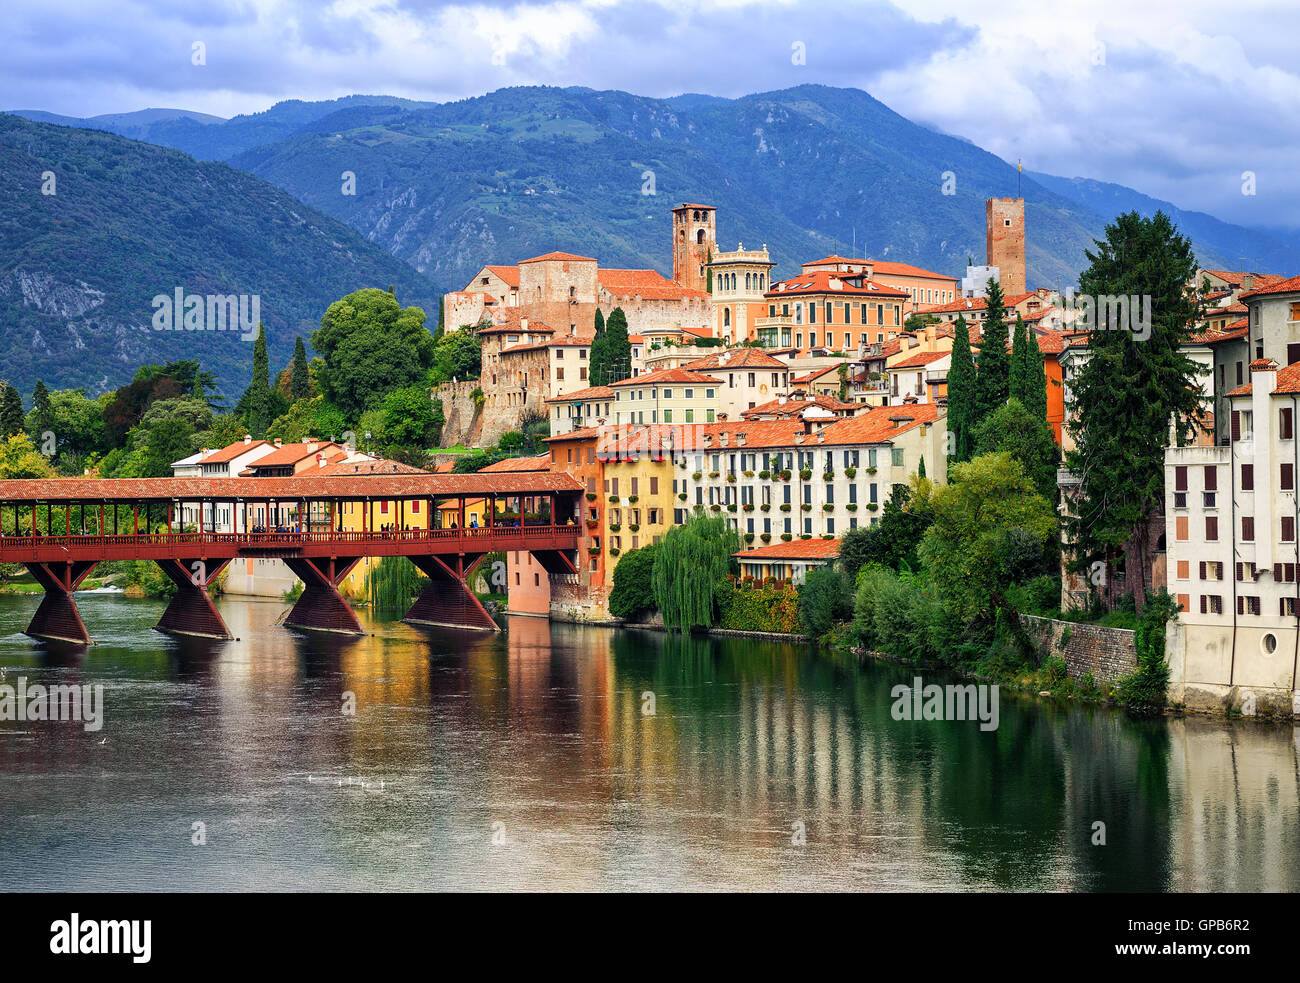 Bassano del Grappa, pequeña ciudad medieval en los Alpes, la región del Veneto, Italia Foto de stock